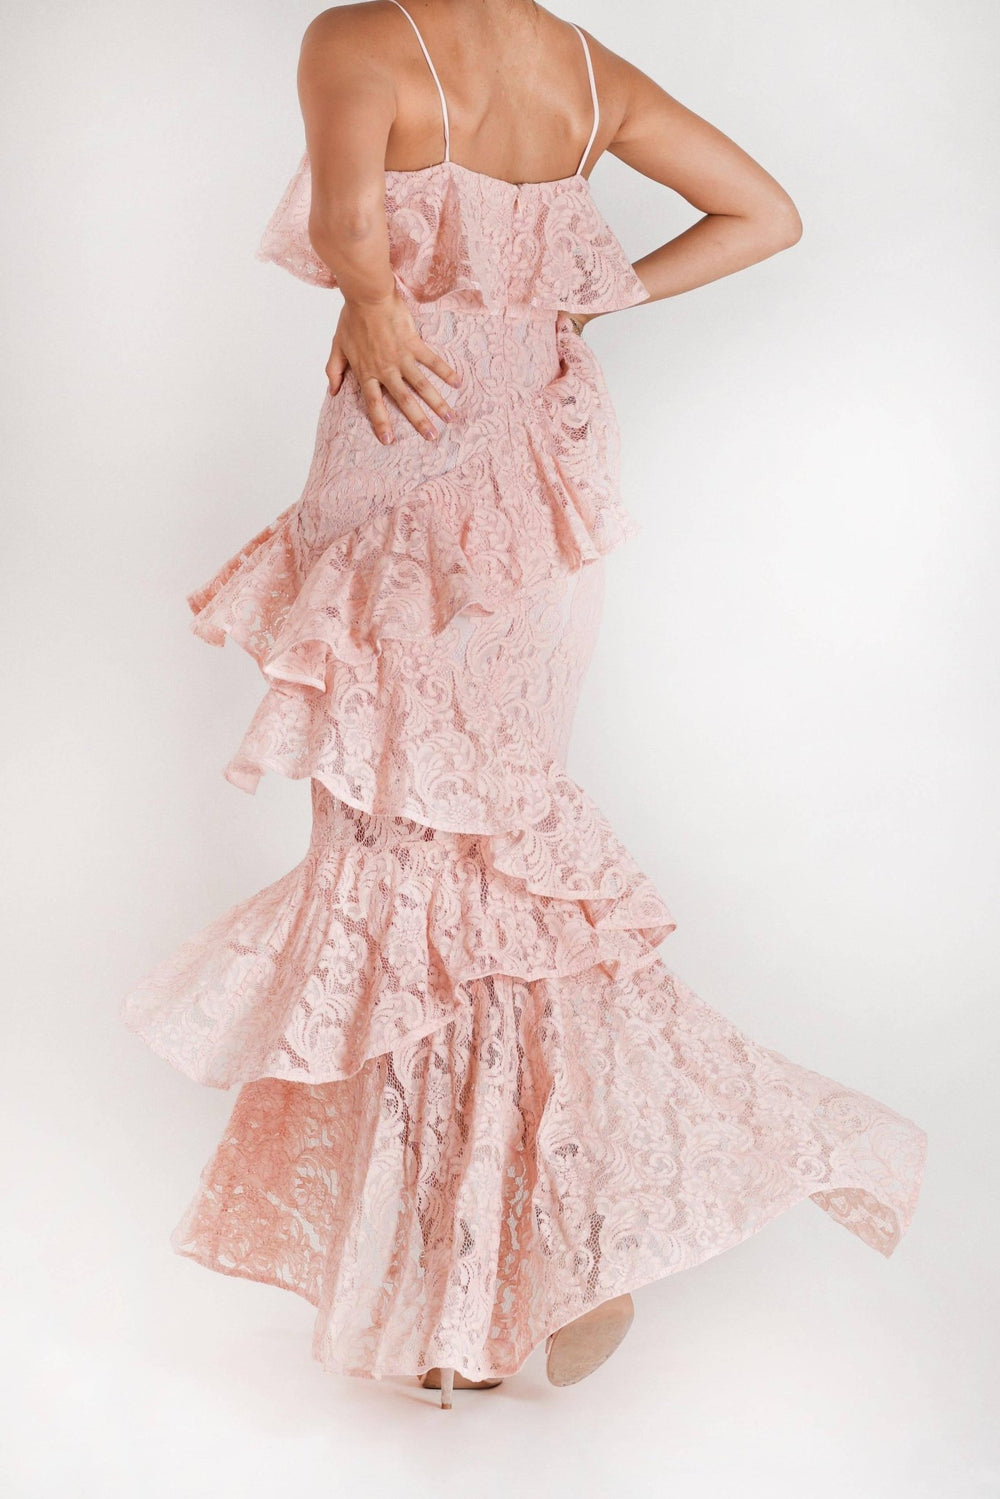 Perla - vestido rosa encaje - Lend the Trend renta de vestidos mexico